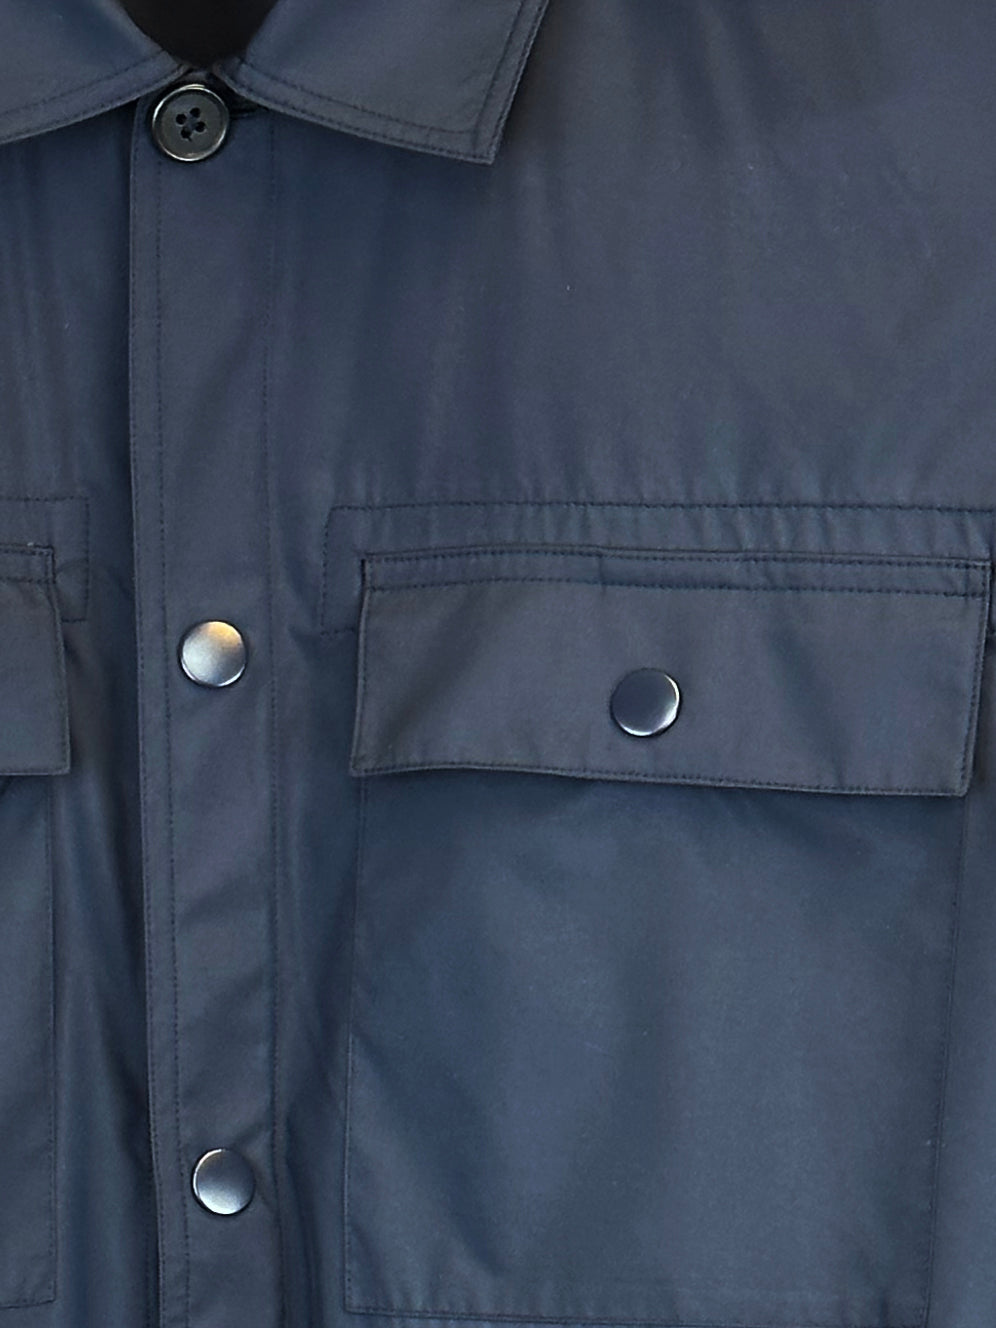 Patrick Assaraf Nylon Flap Pocket Shirt Jacket